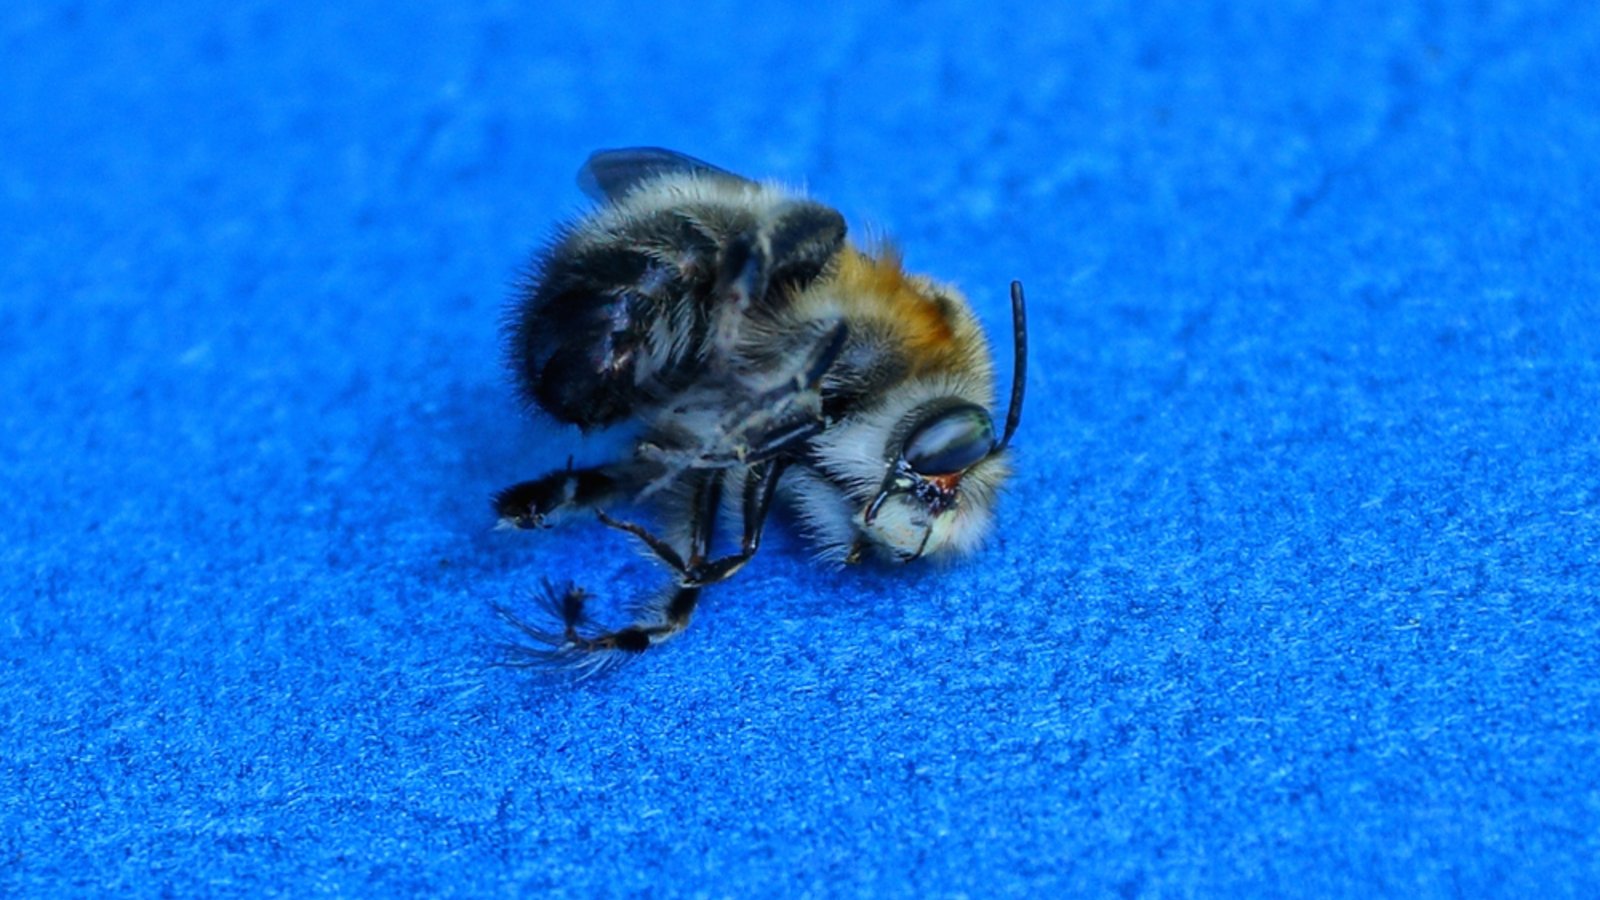 Droht jetzt eine Strafe für die tote Biene?Foto: Butus / shutterstock.com